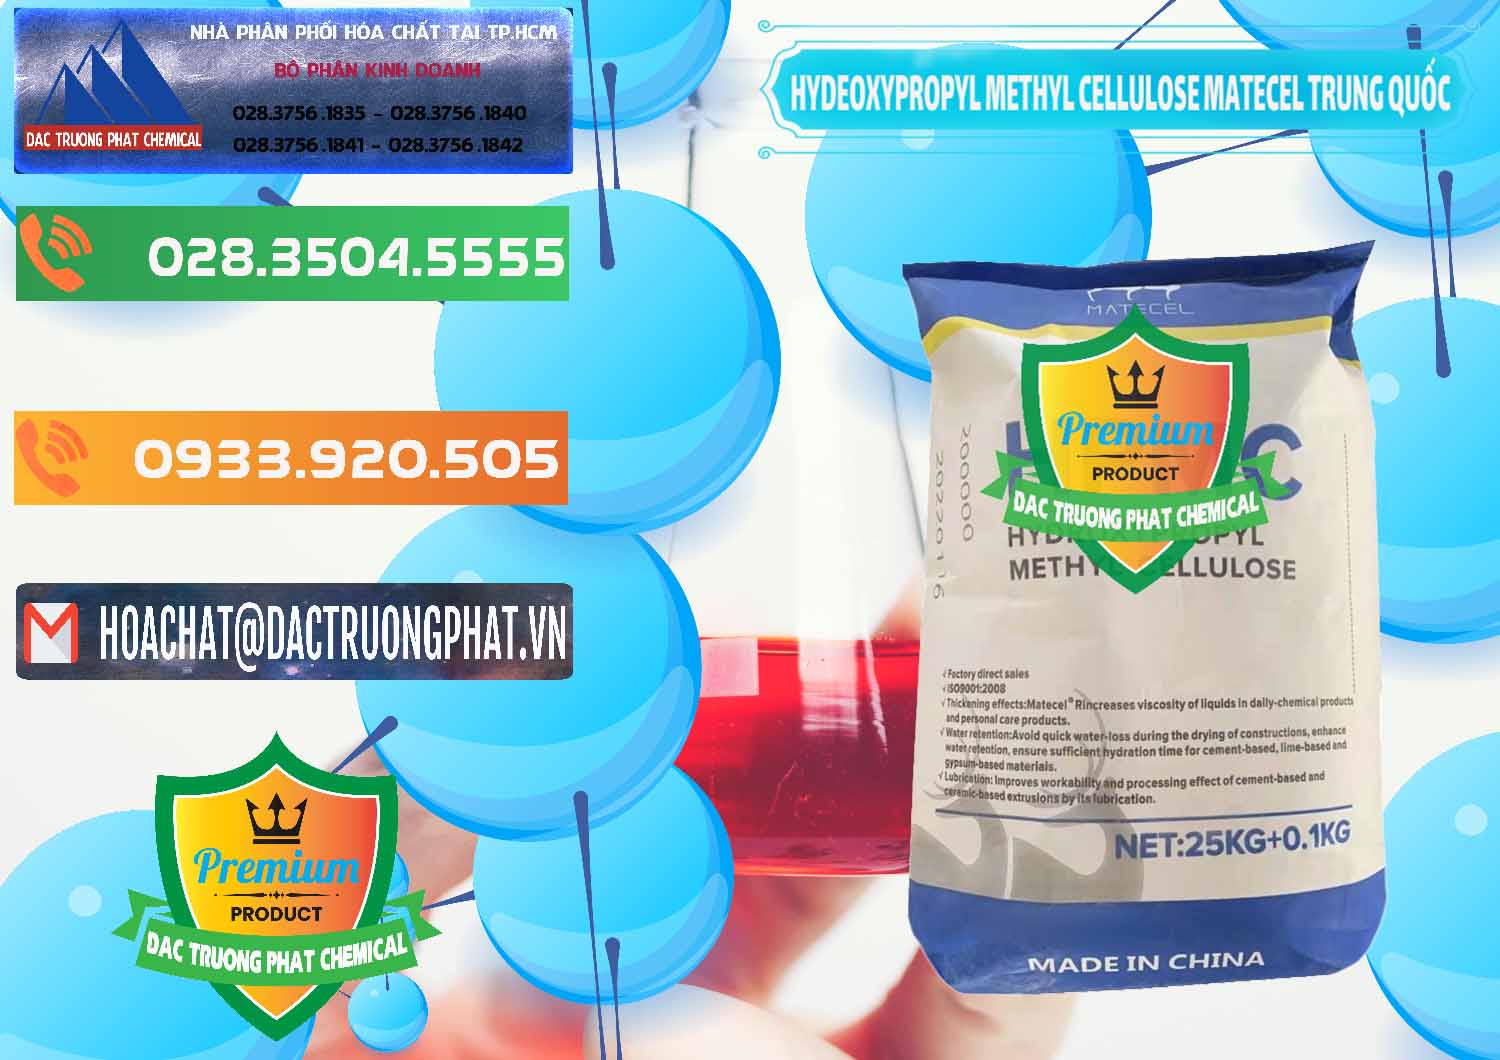 Cung cấp và bán Chất Tạo Đặc HPMC - Hydroxypropyl Methyl Cellulose Matecel Trung Quốc China - 0396 - Cung cấp & phân phối hóa chất tại TP.HCM - hoachatxulynuoc.com.vn